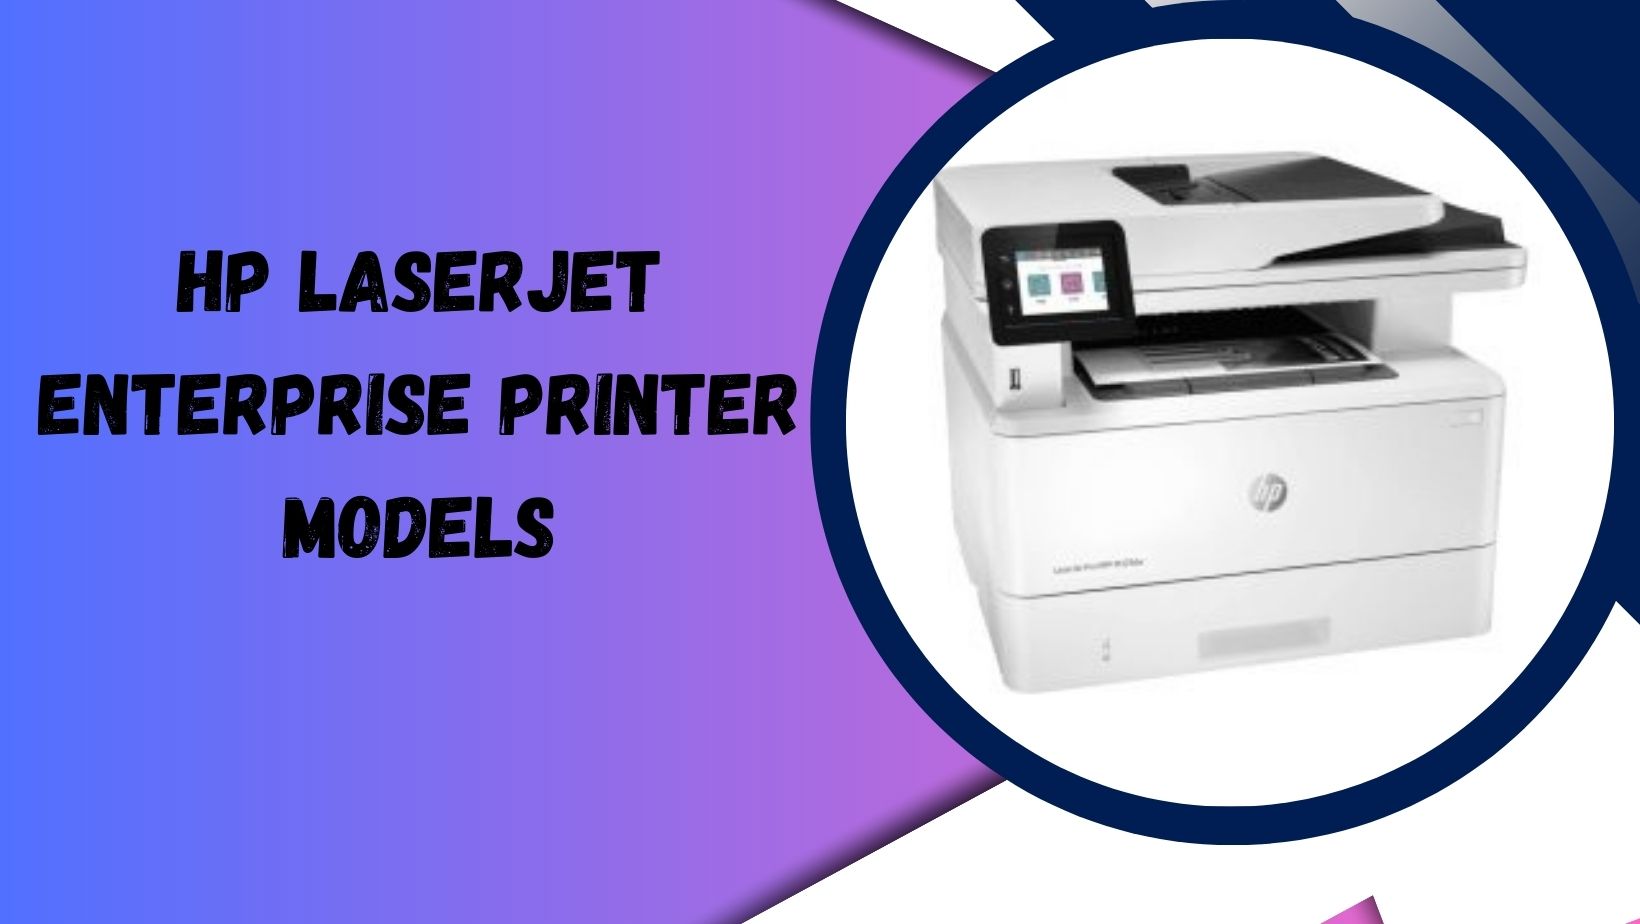 HP-LaserJet-Enterprise-Printer-Models-Banner